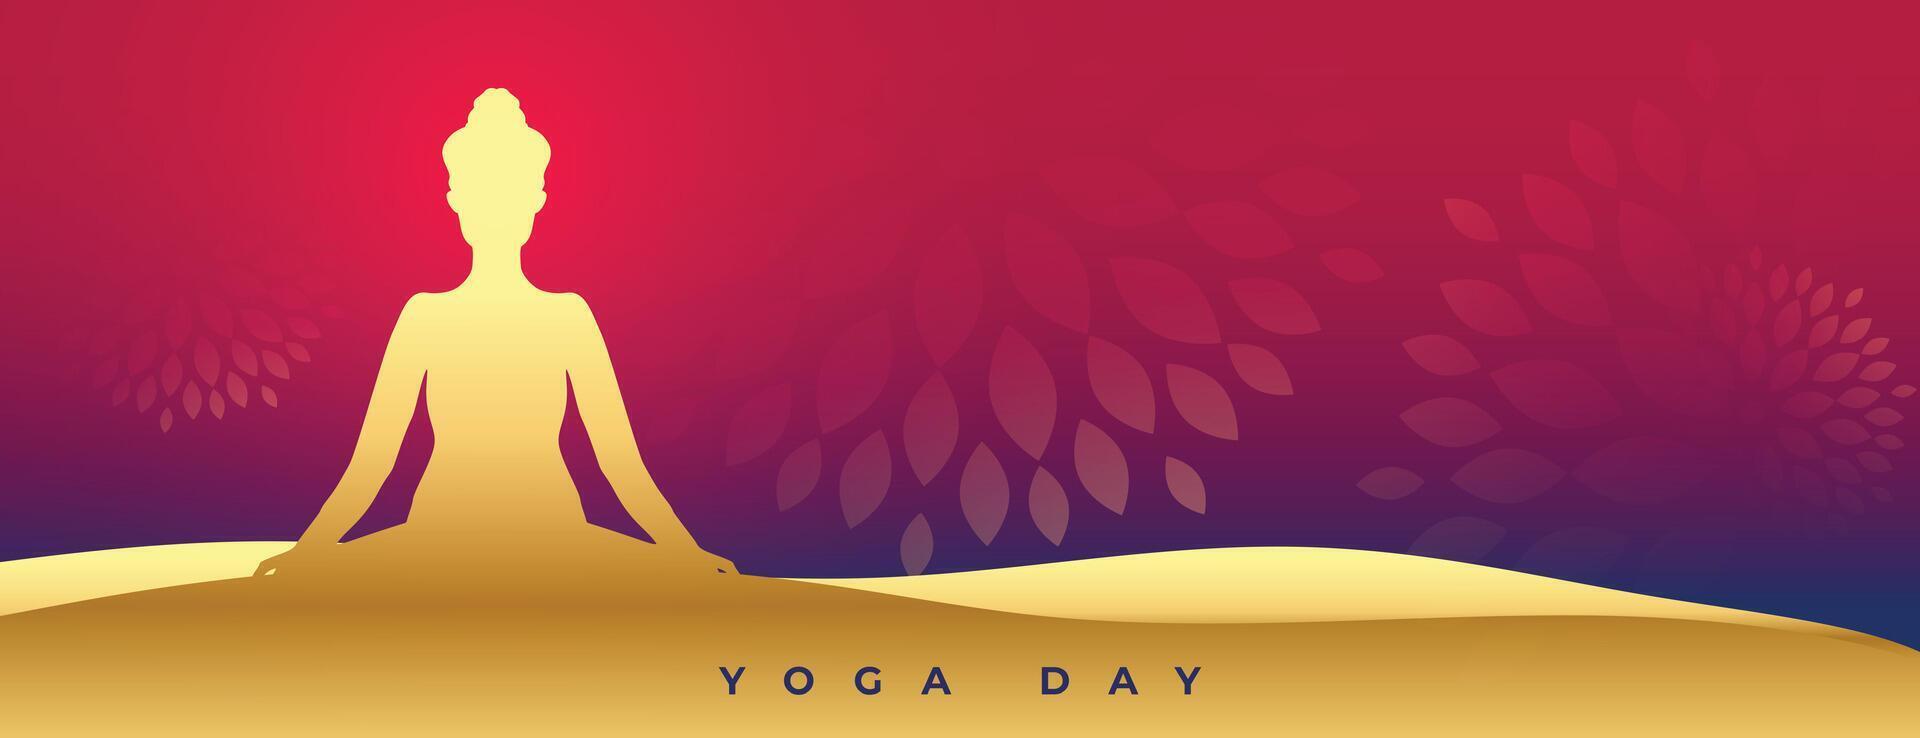 elegante mundo yoga día dorado póster con mediación postura vector